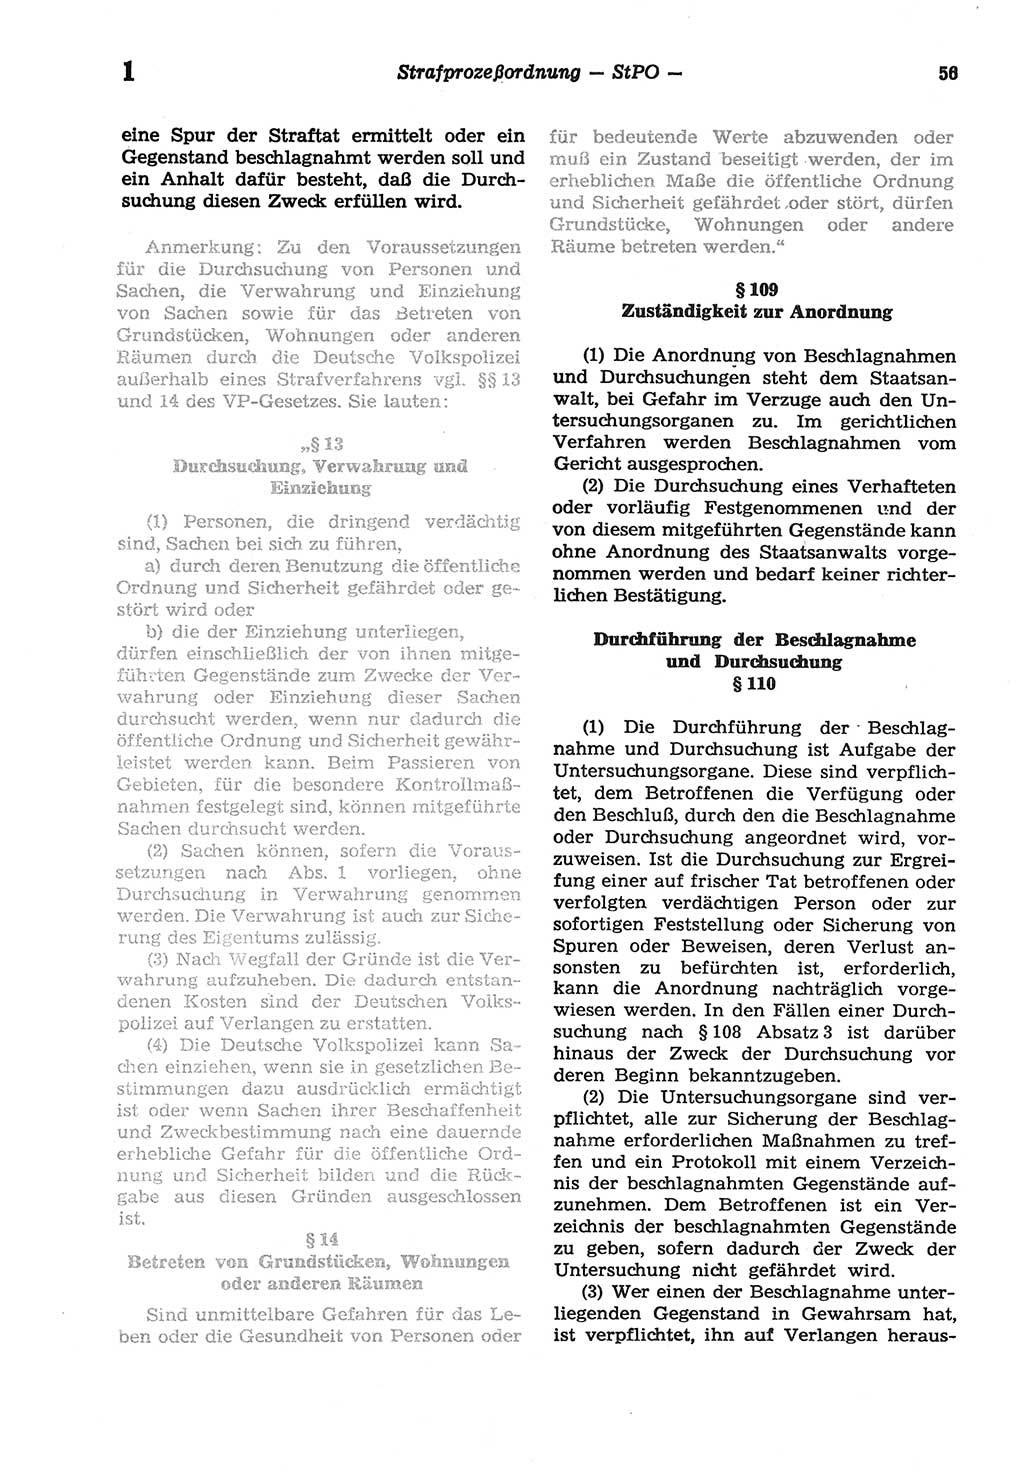 Strafprozeßordnung (StPO) der Deutschen Demokratischen Republik (DDR) sowie angrenzende Gesetze und Bestimmungen 1977, Seite 56 (StPO DDR Ges. Best. 1977, S. 56)